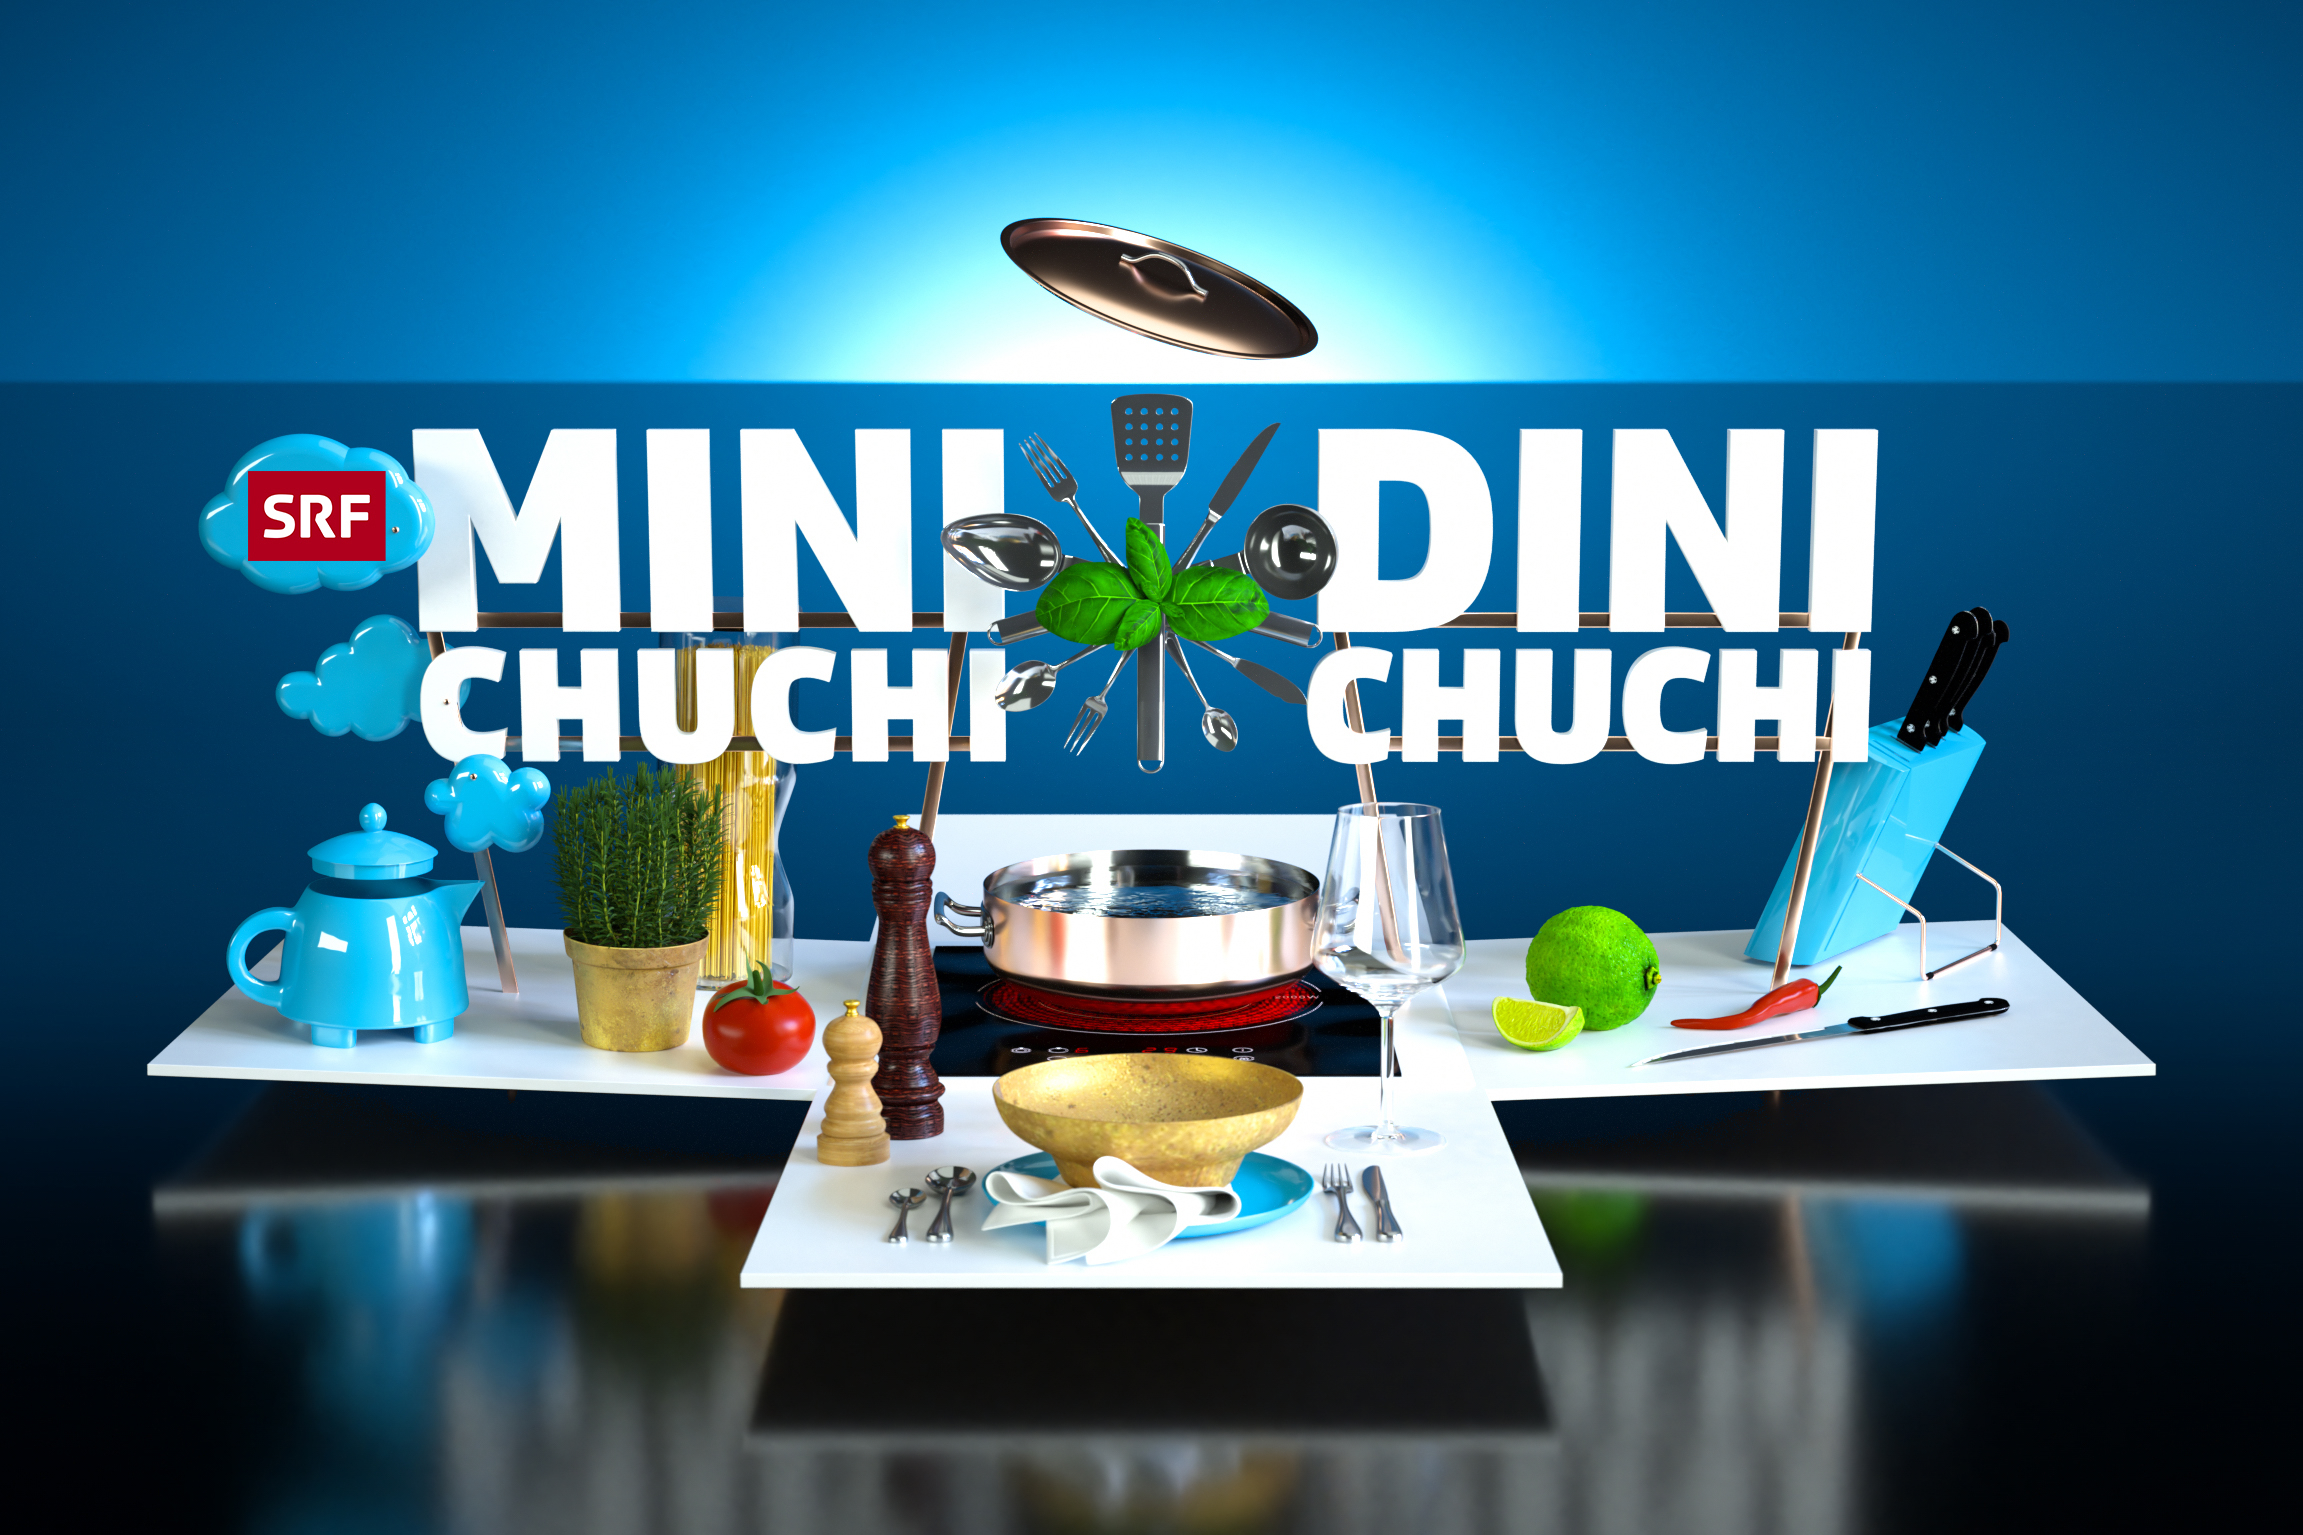 Mini Chuchi, Dini Chuchi Keyvisual 2021